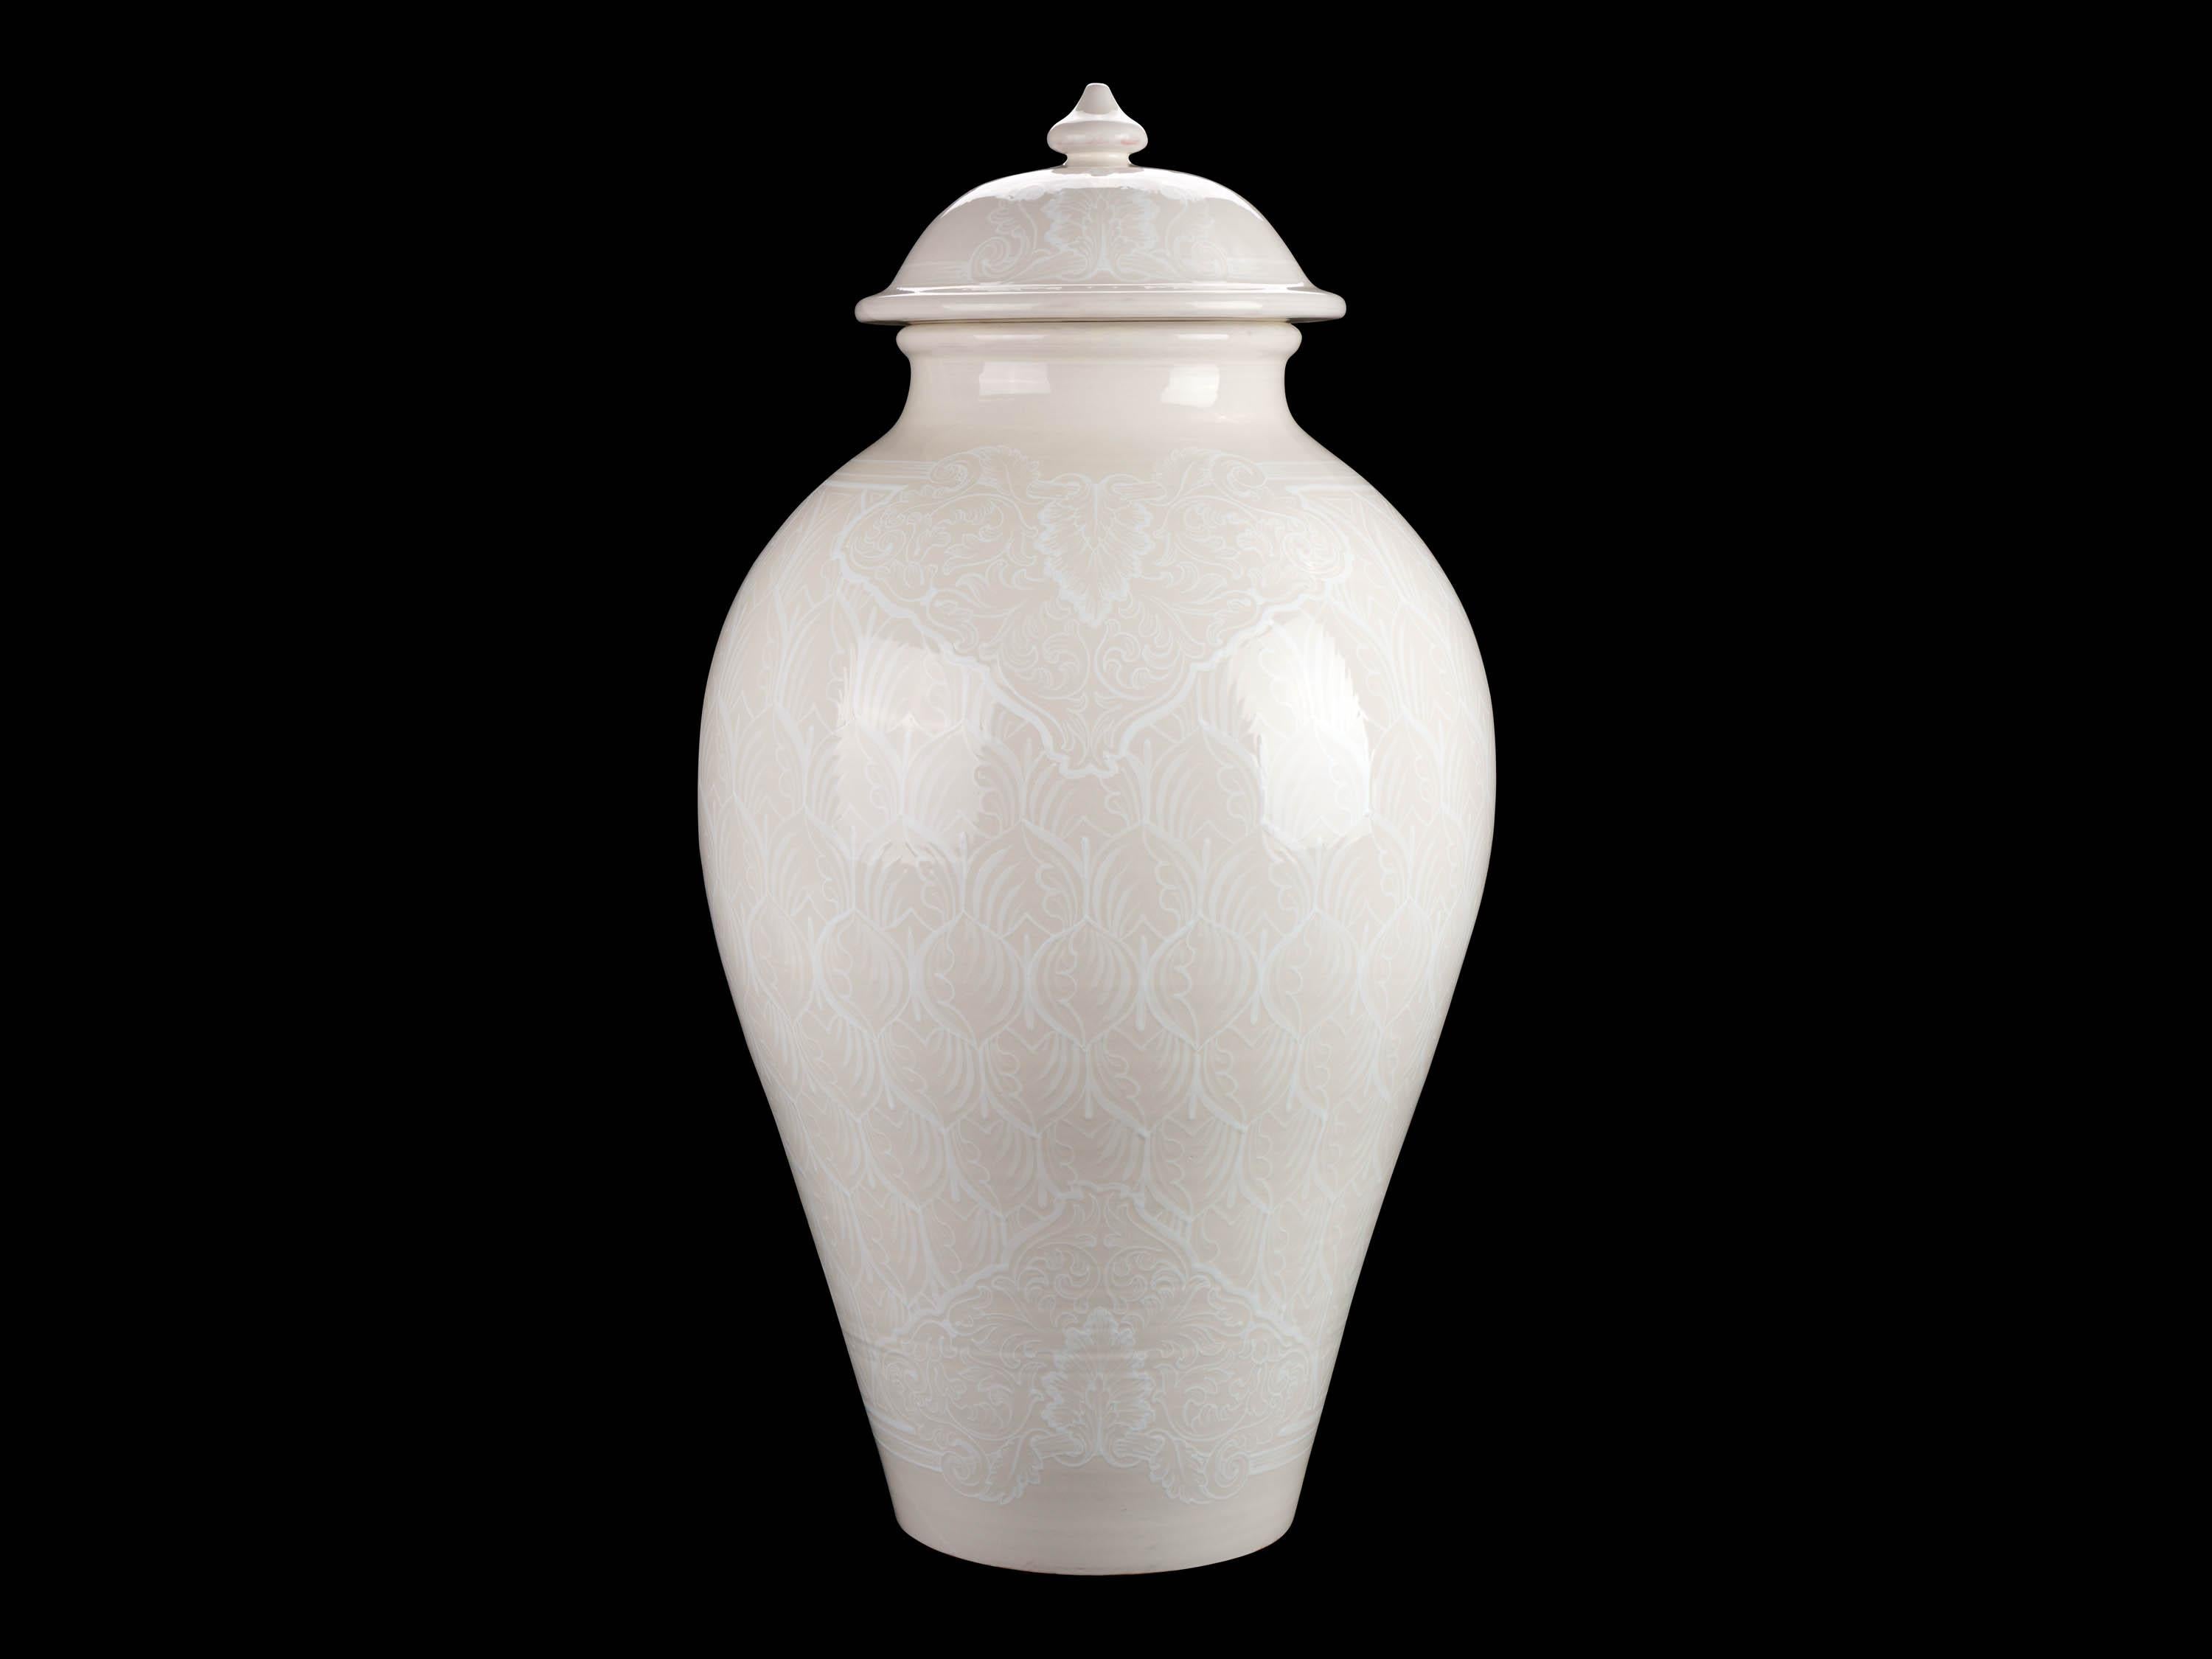 Contemporary Vase Potiche Jar Lid Decorated Ornament Decorative Majolica Total White Vessel For Sale